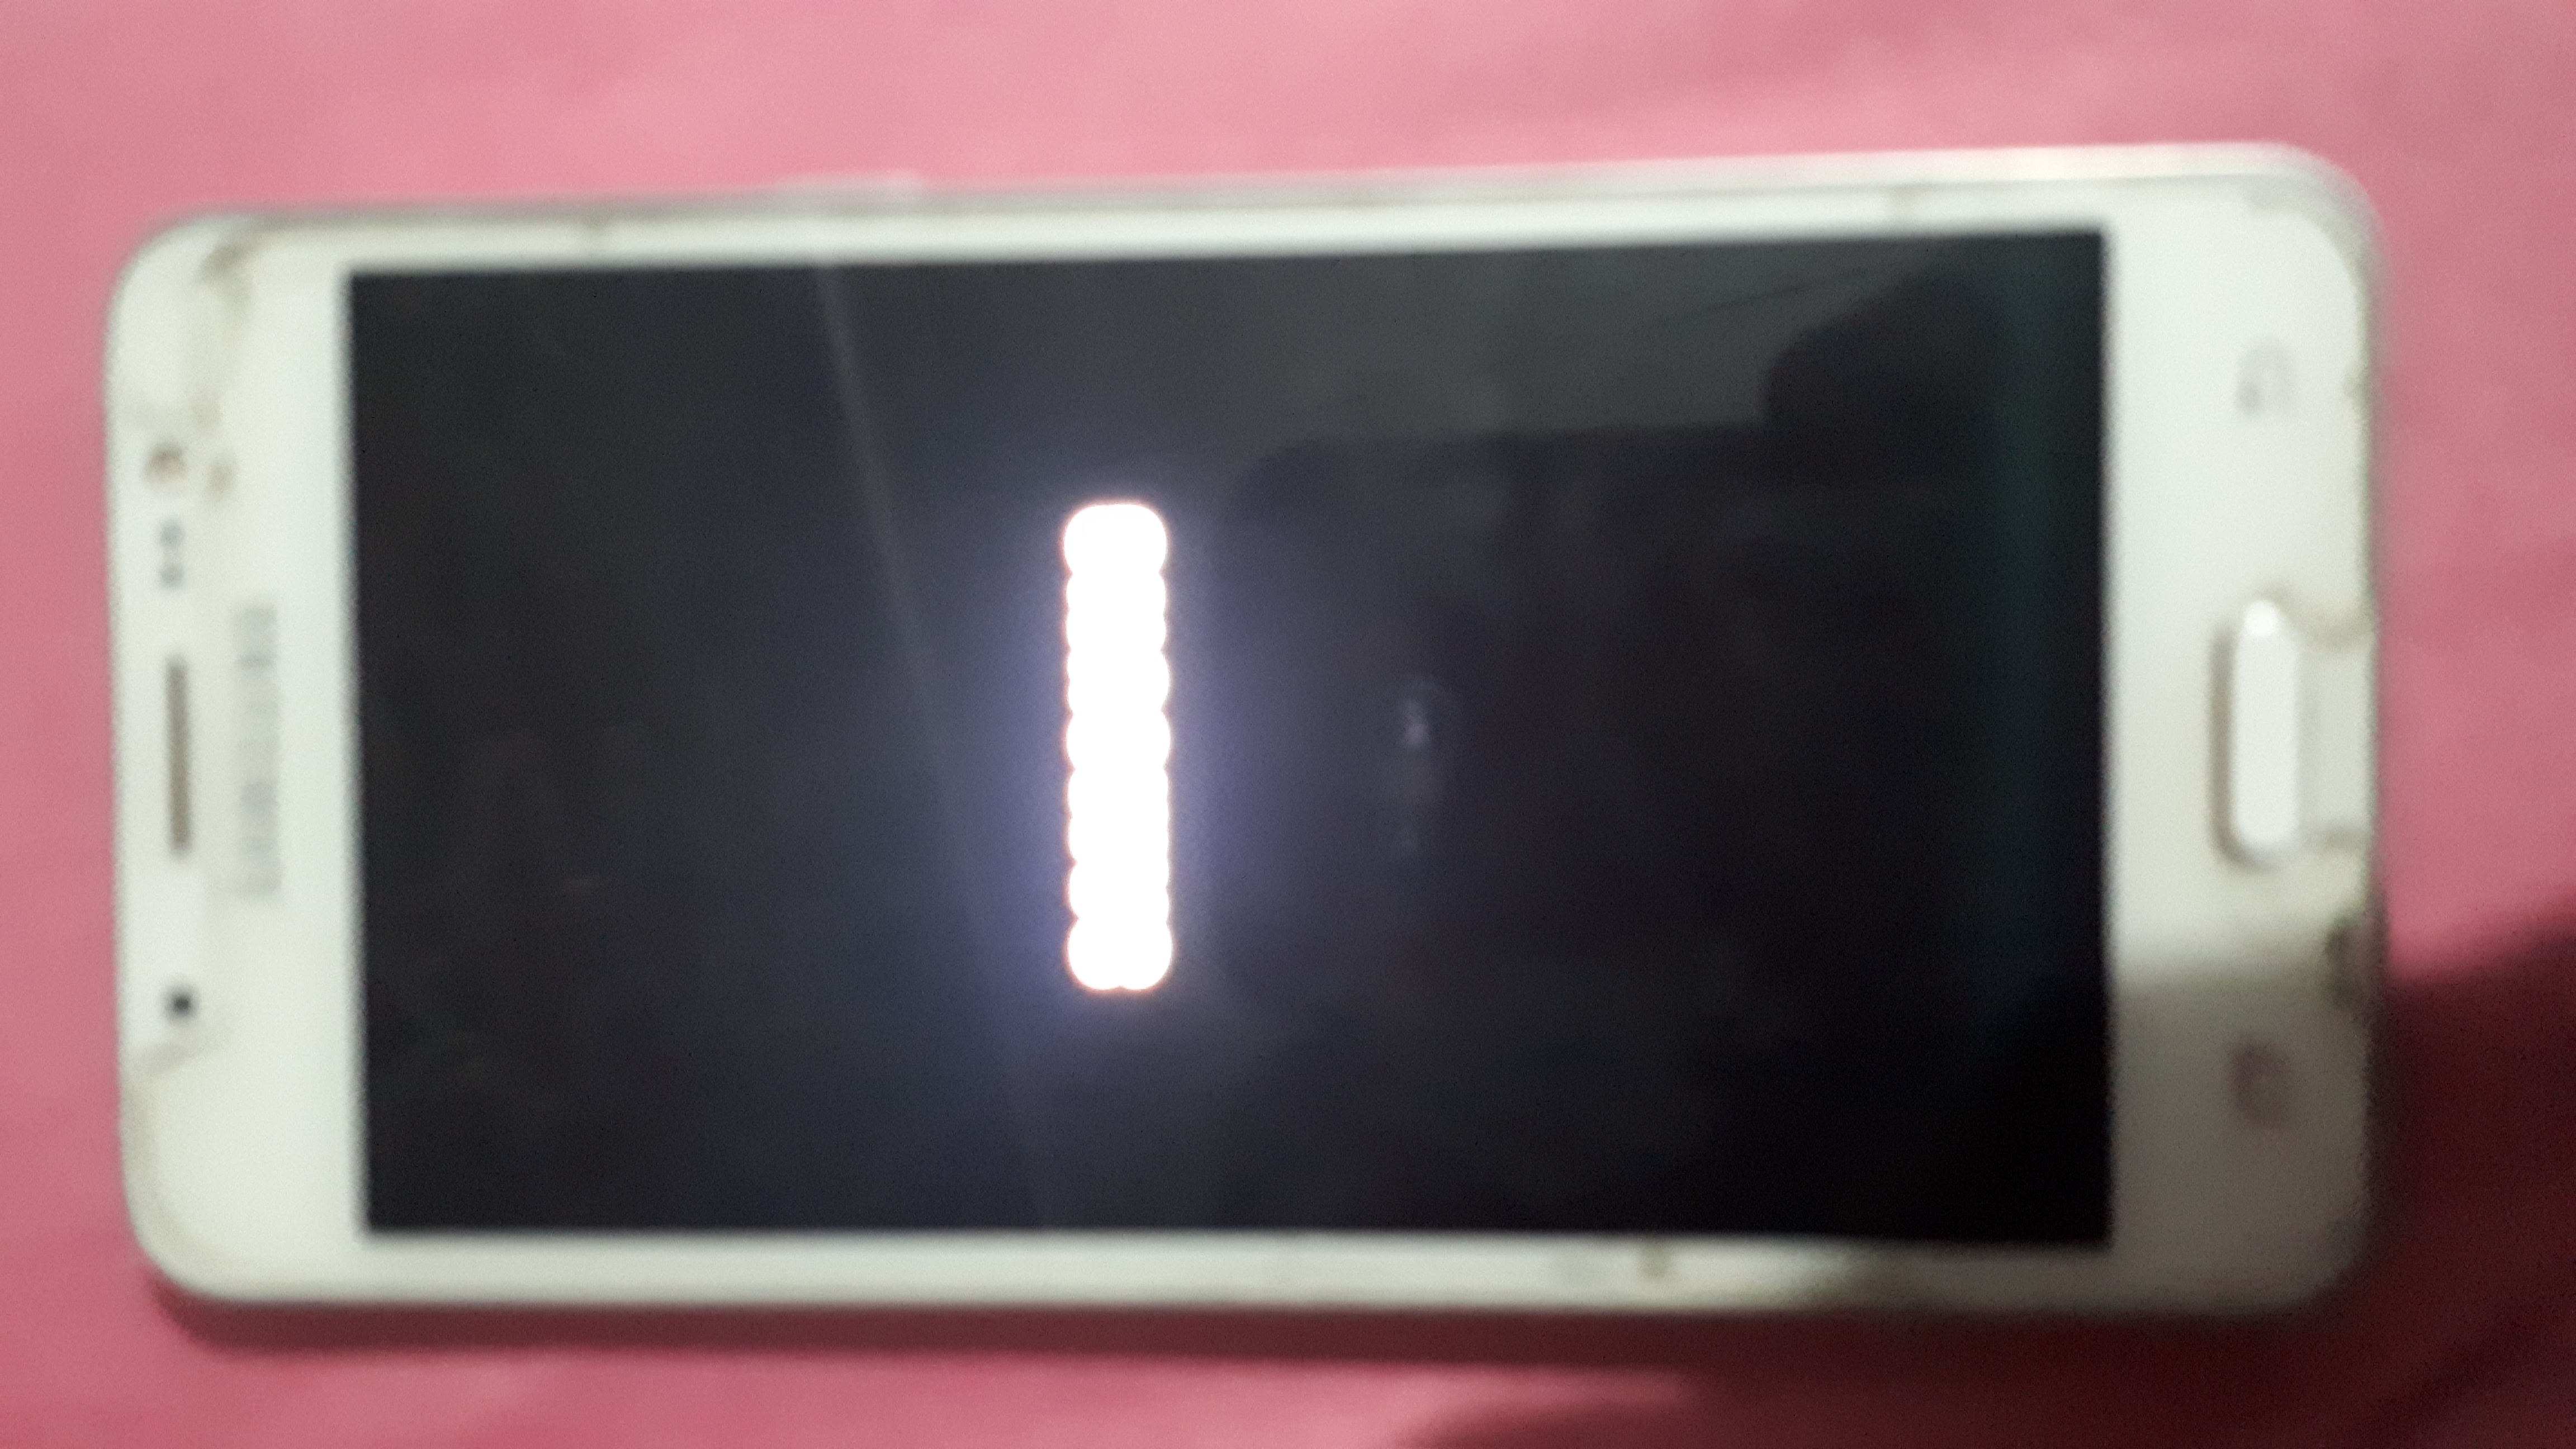 Samsung Galaxy J5 перезагружался сам несколько дней, и сегодня выключился и не включается, вытаскивал батарейку и ничего